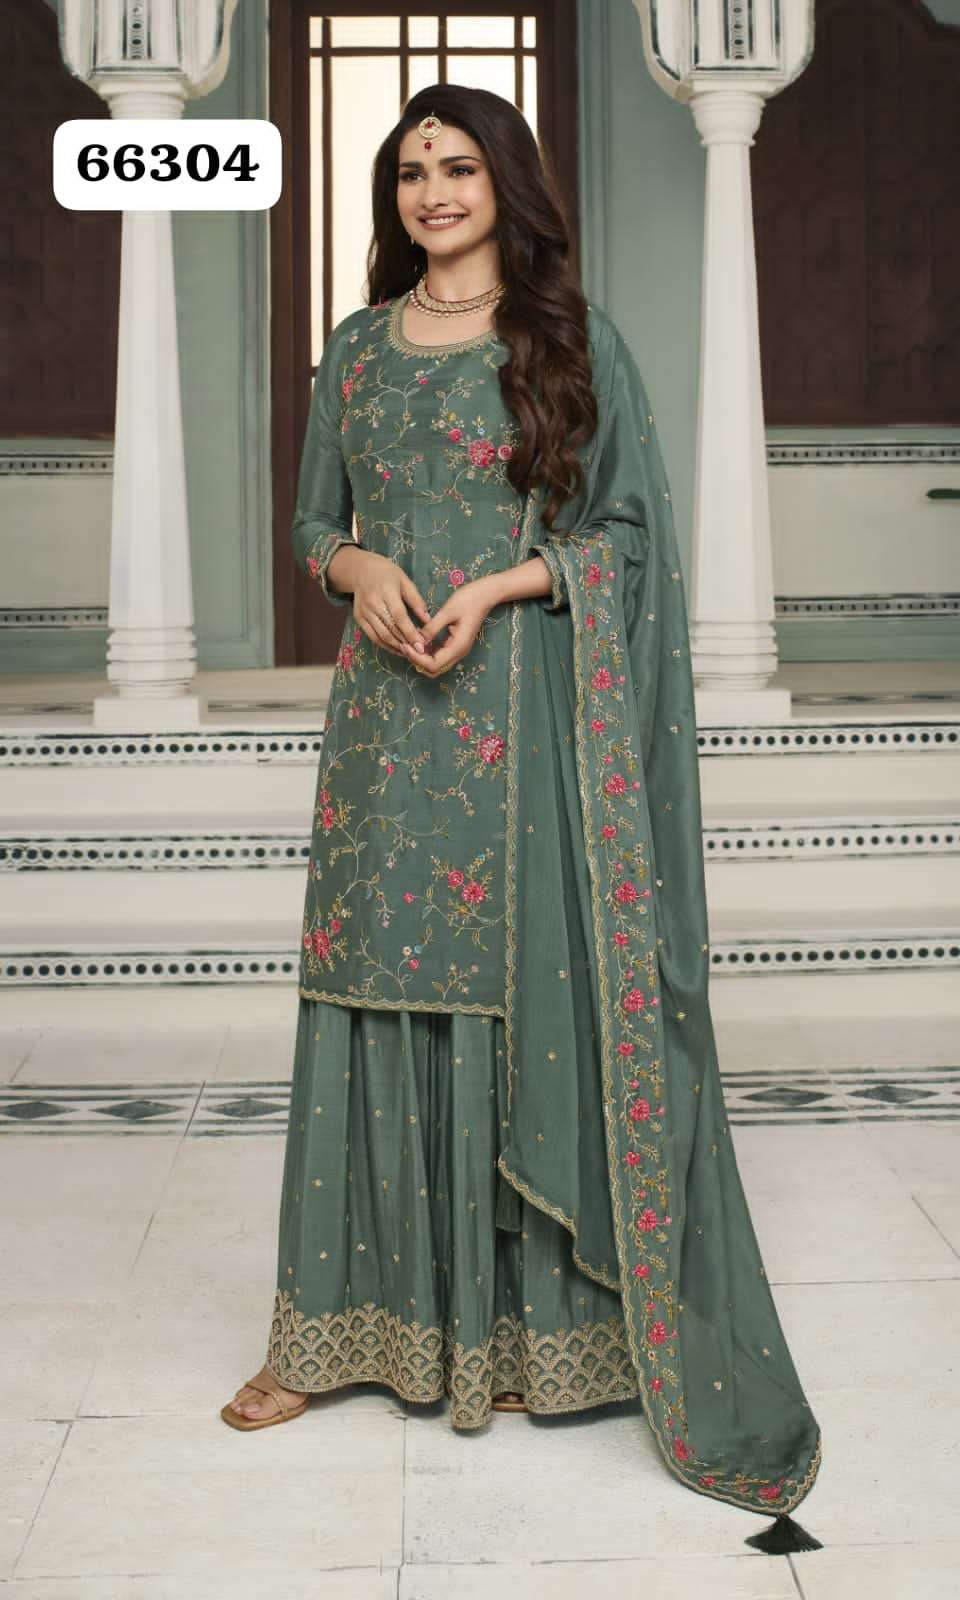 vinay fashion kuleesh avanti 66301-66306 series latest designer salwar kameez wholesaler surat gujarat